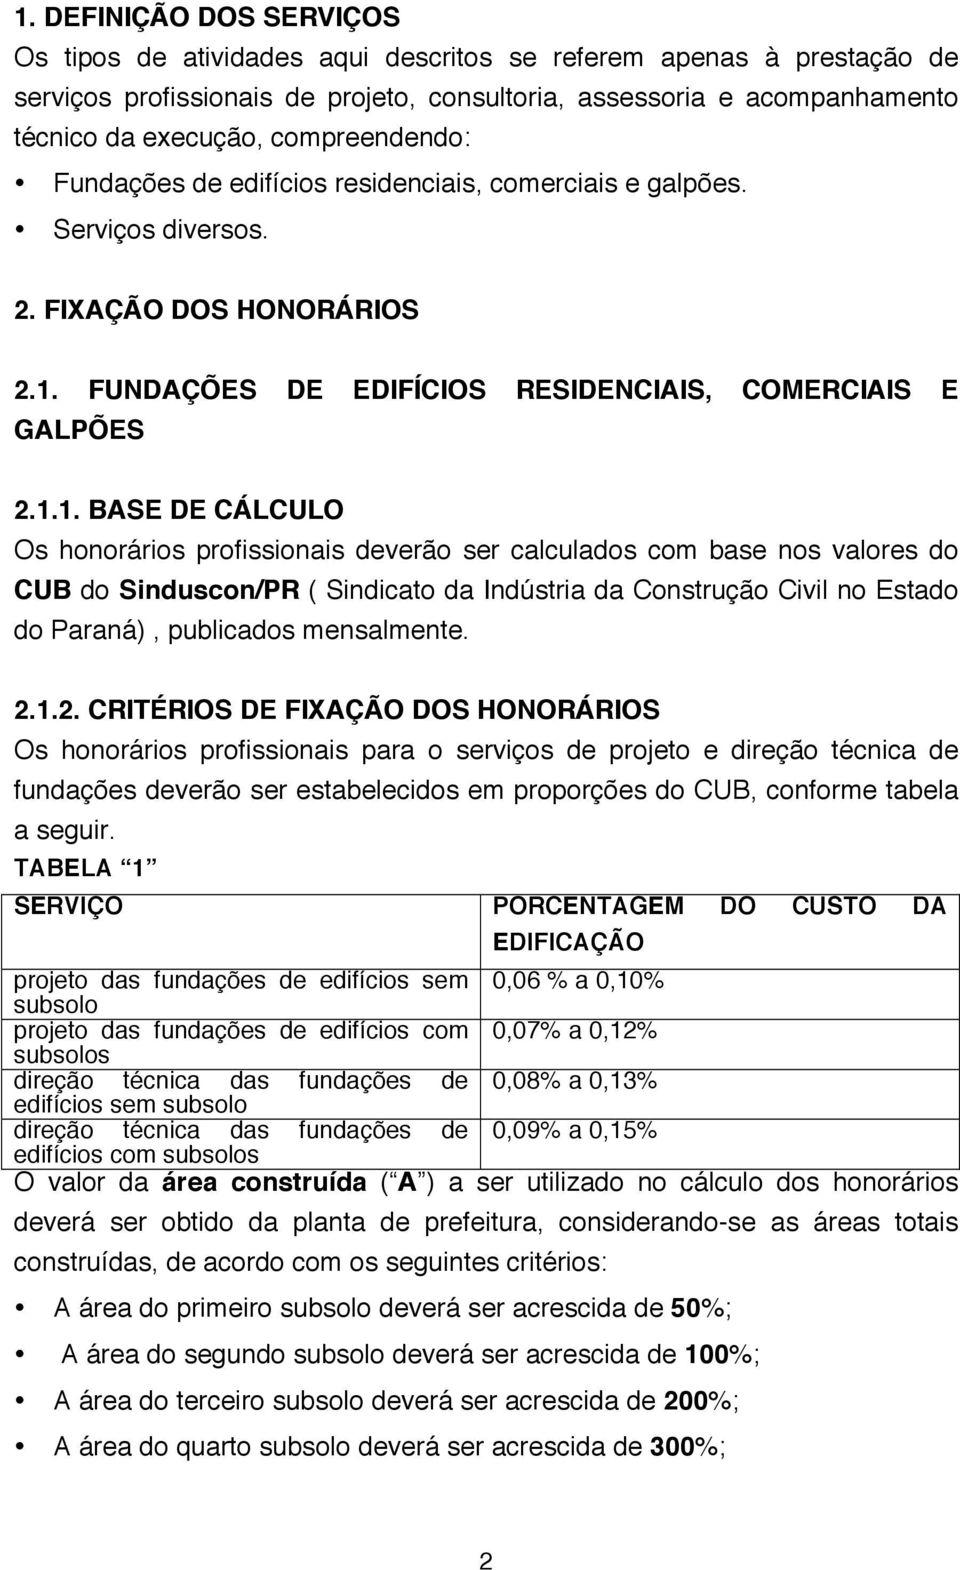 FUNDAÇÕES DE EDIFÍCIOS RESIDENCIAIS, COMERCIAIS E GALPÕES 2.1.